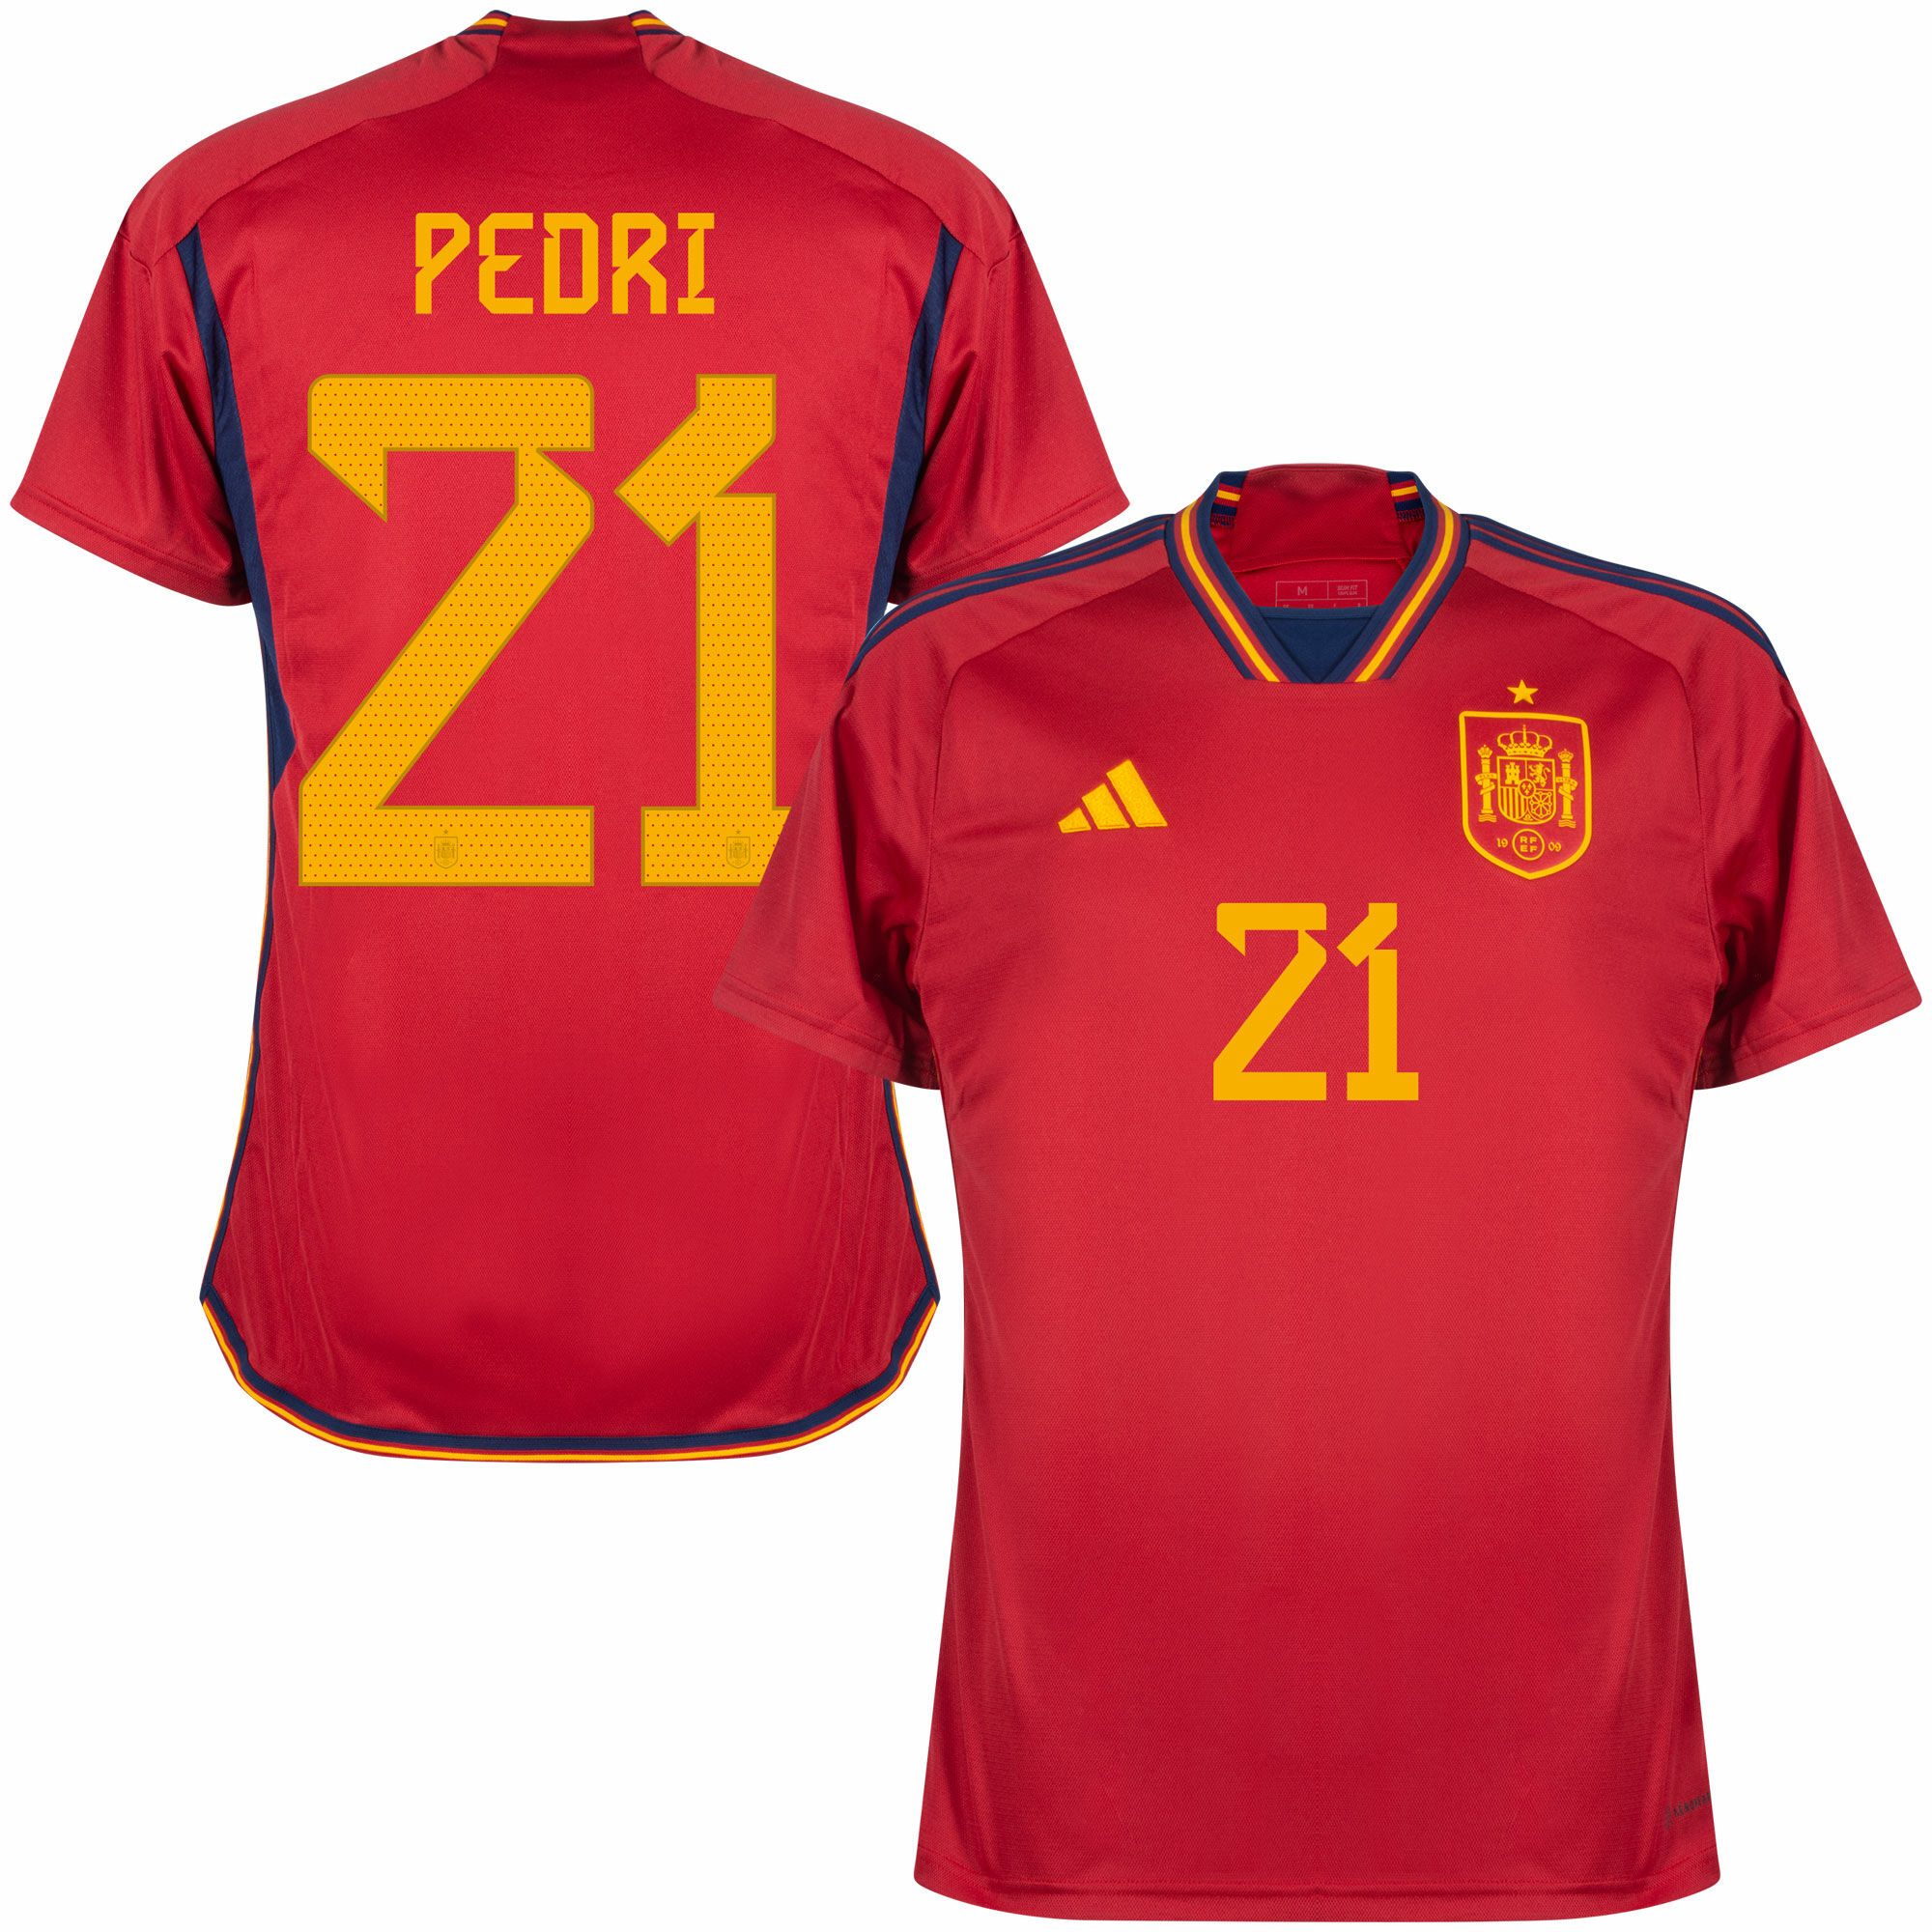 Španělsko - Dres fotbalový - Pedri, oficiální potisk, číslo 21, červený, domácí, sezóna 2022/23